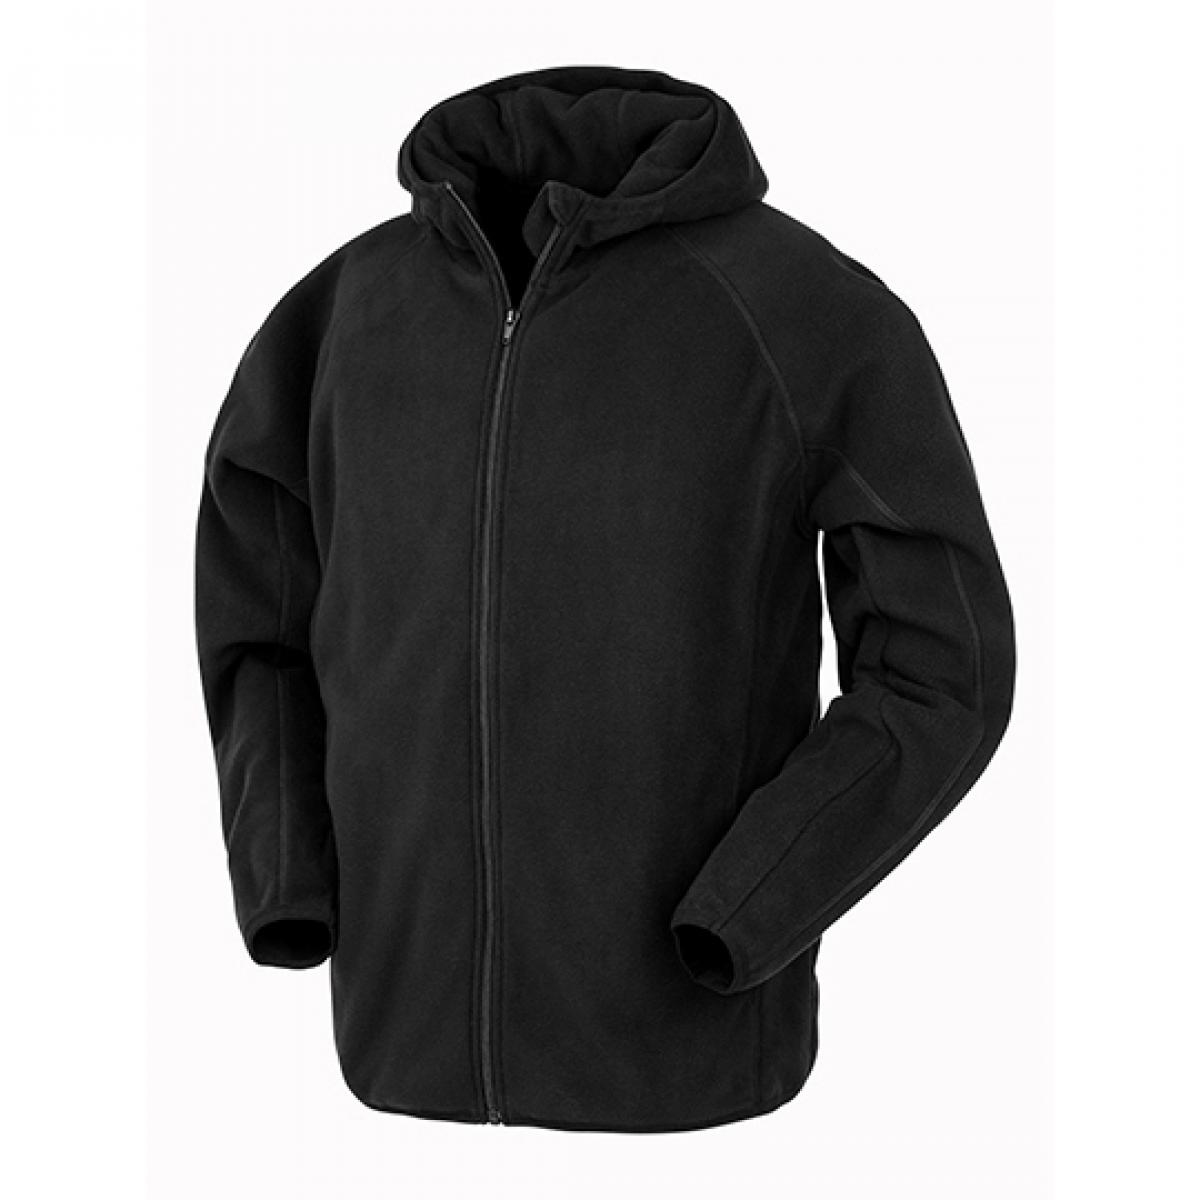 Hersteller: Result Genuine Recycled Herstellernummer: R906X Artikelbezeichnung: Hooded Recycled Microfleece Jacket Farbe: Black